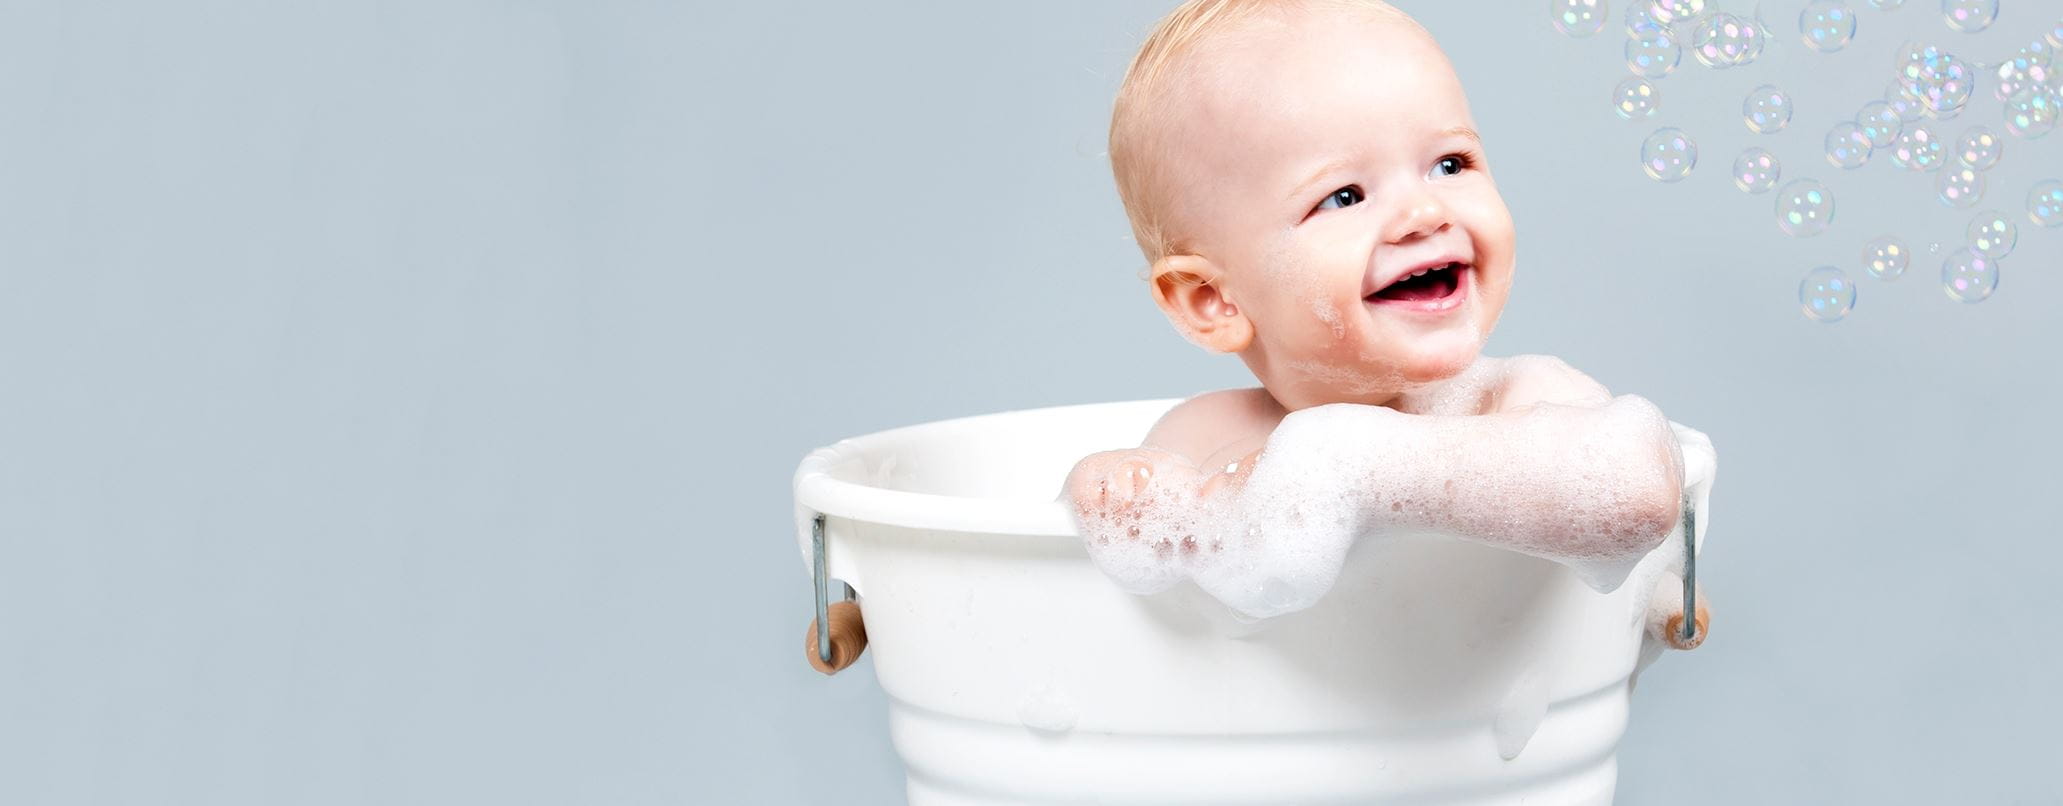 Prodotti per il bagnetto neonato: quali scegliere?